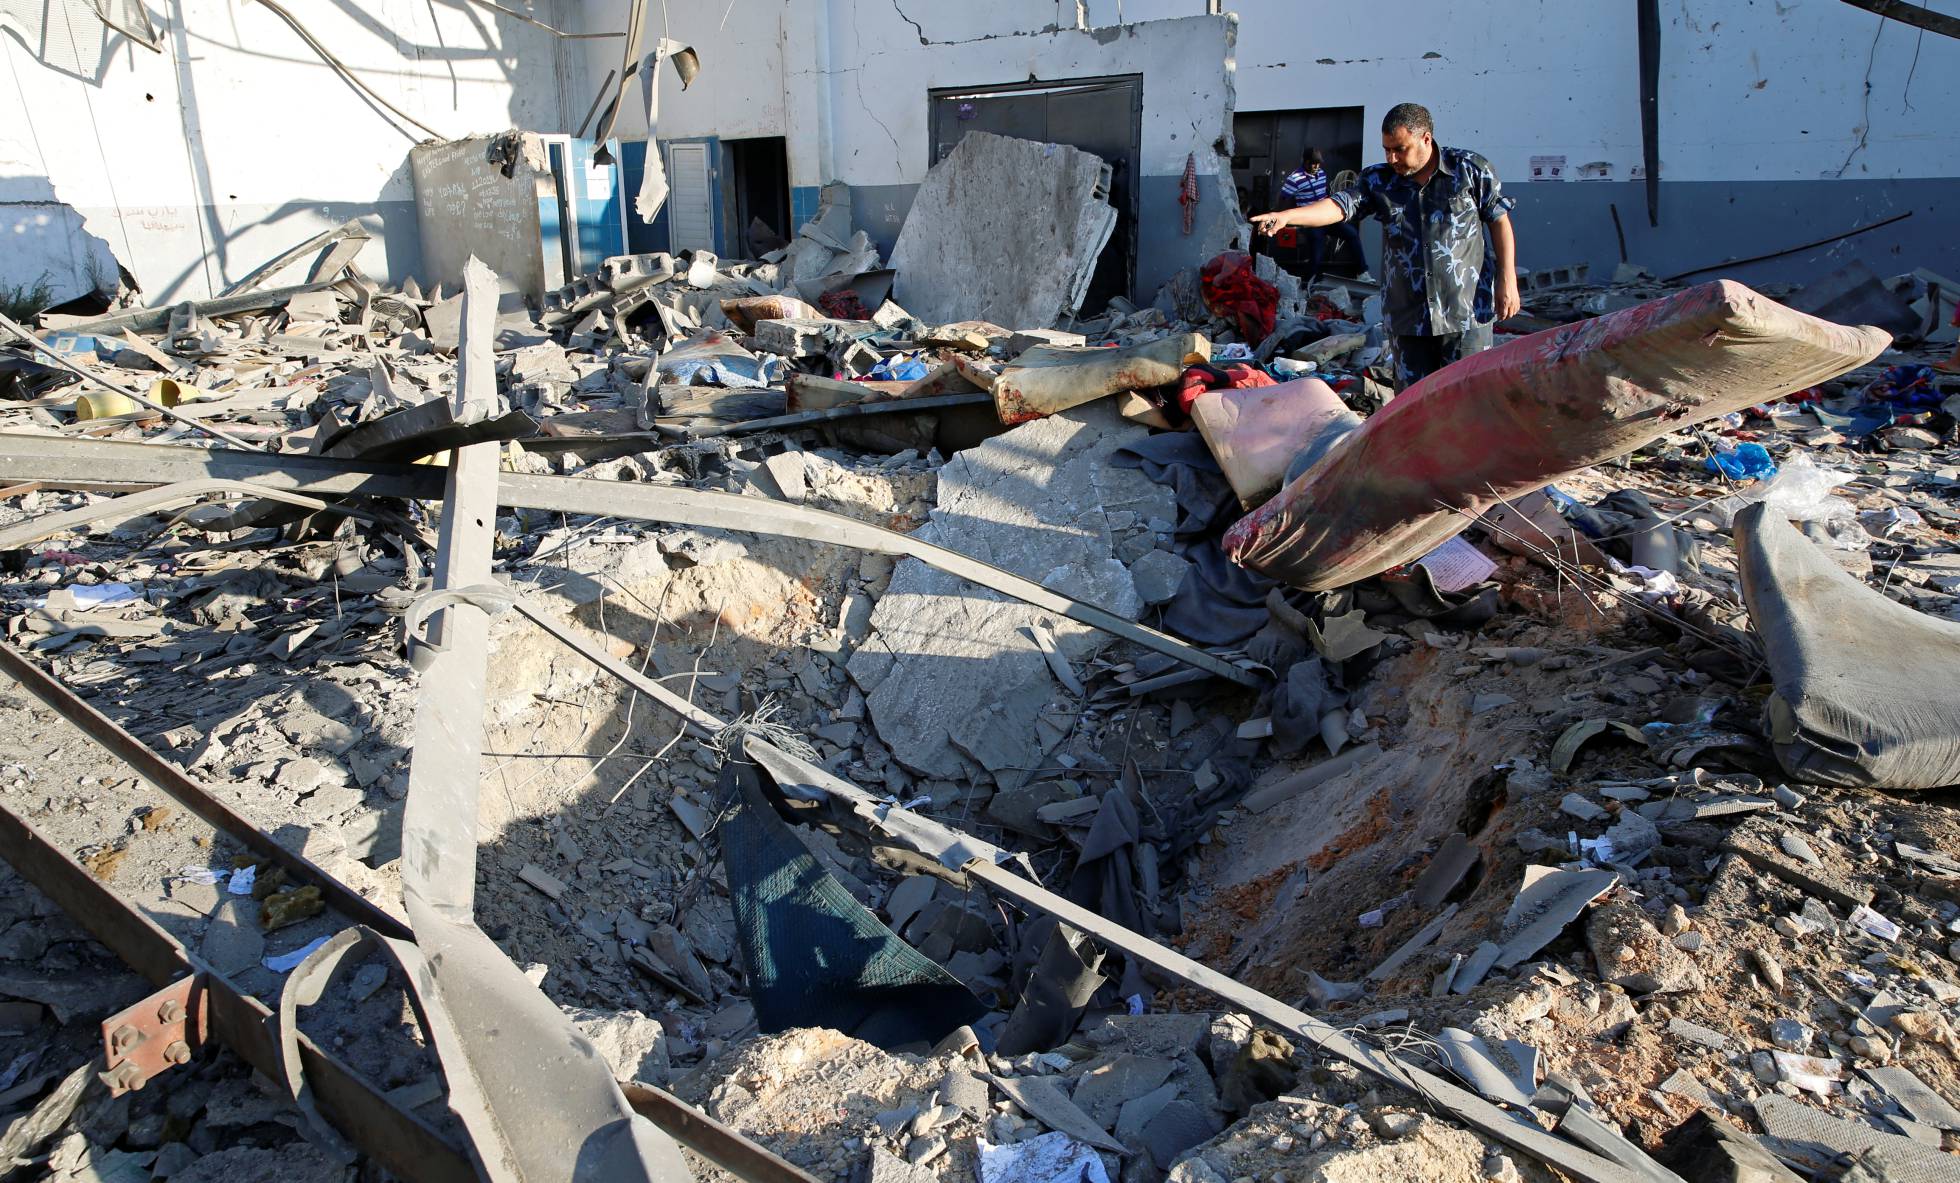 Escombros no centro de detenção de imigrantes atingido por um bombardeio aéreo em Tayura, Trípoli. ISMAIL ZITOUNY (REUTERS)